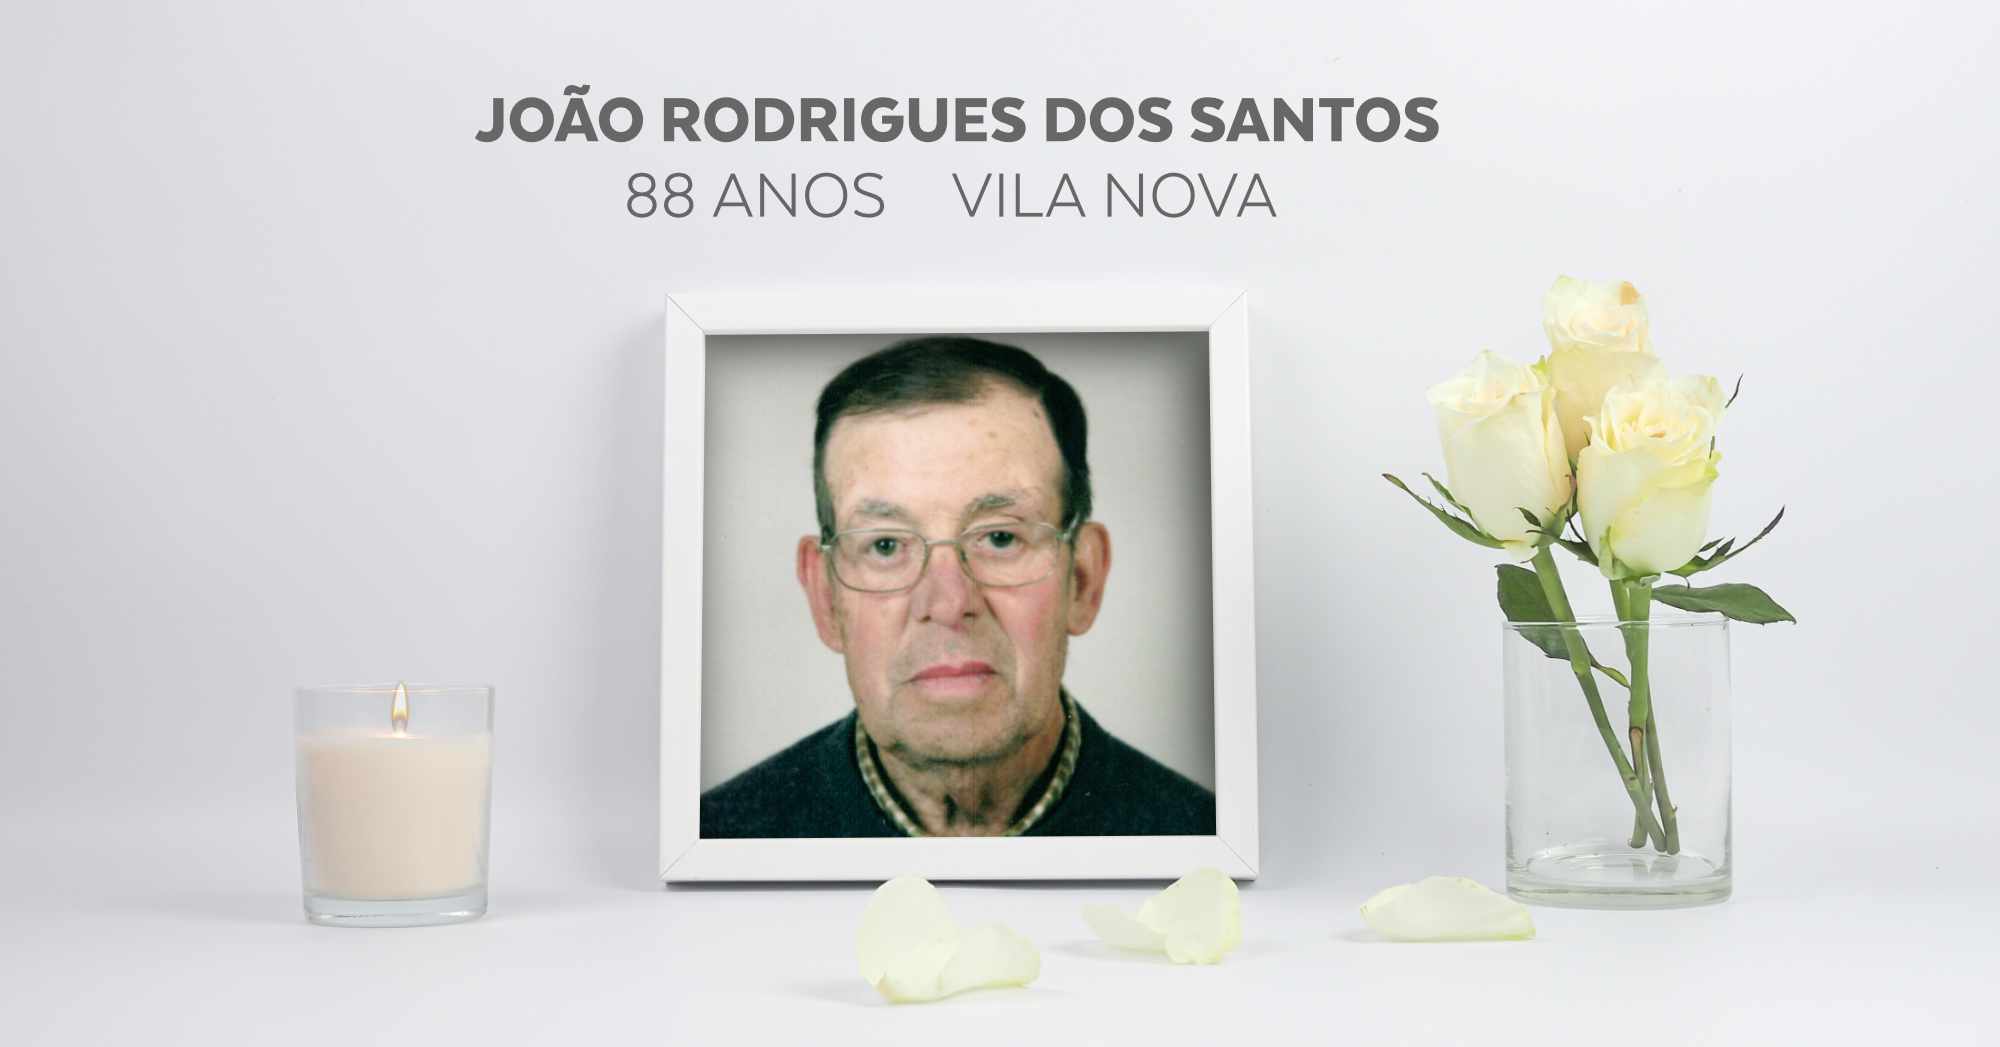 João Rodrigues dos Santos